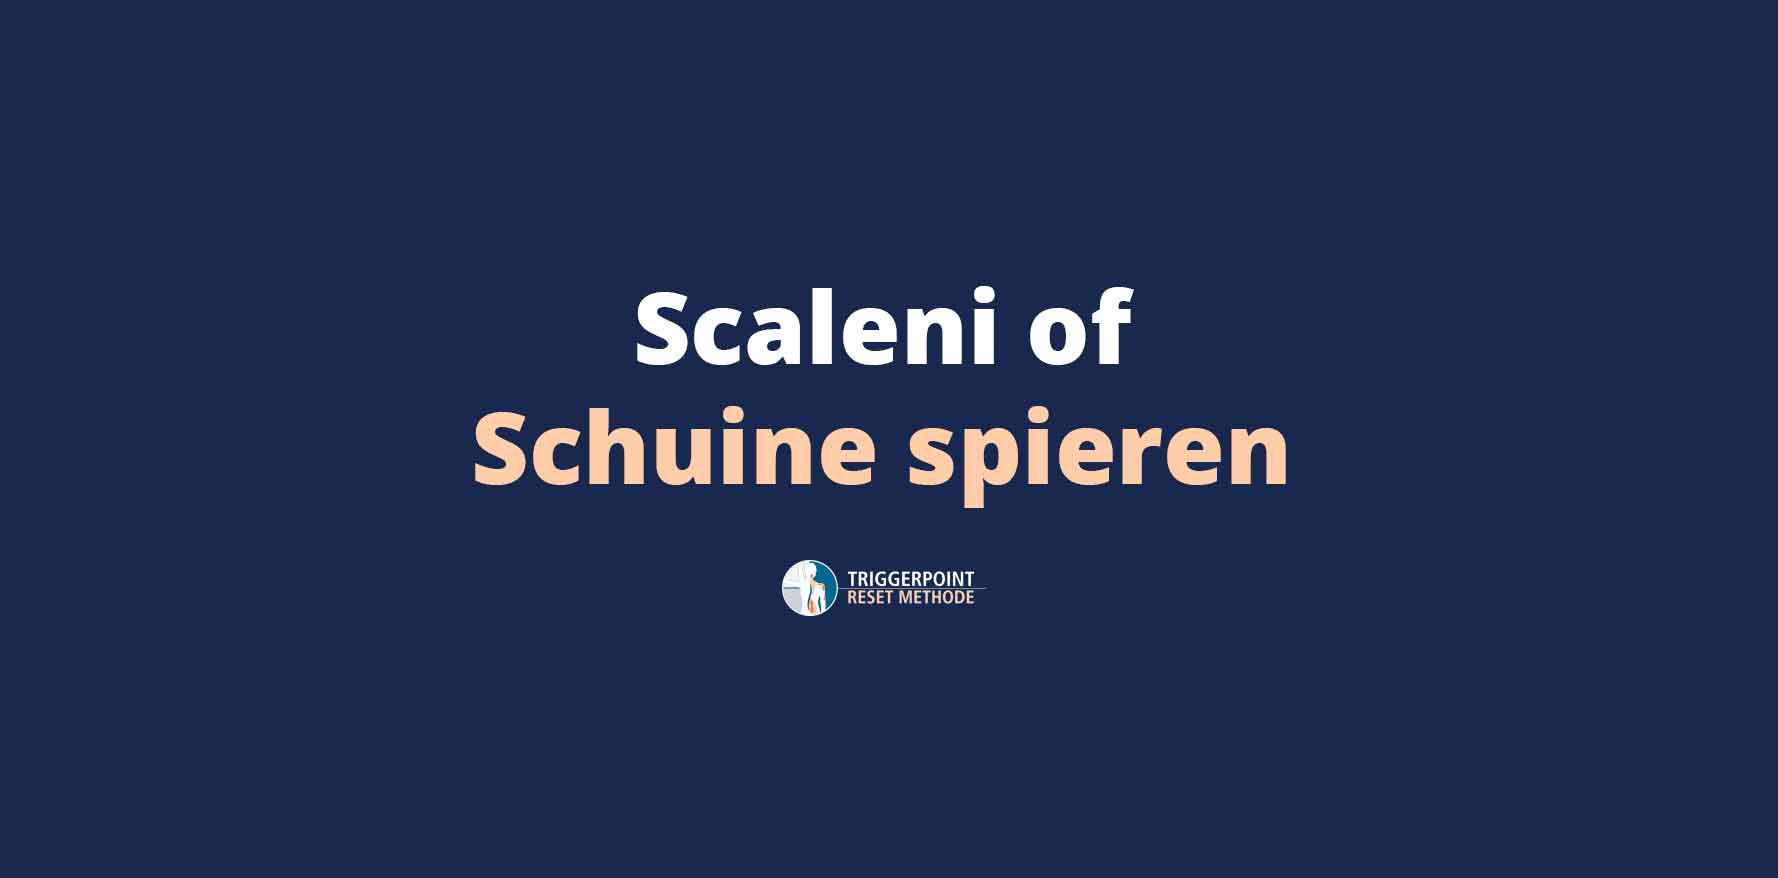 Scaleni of schuine spieren